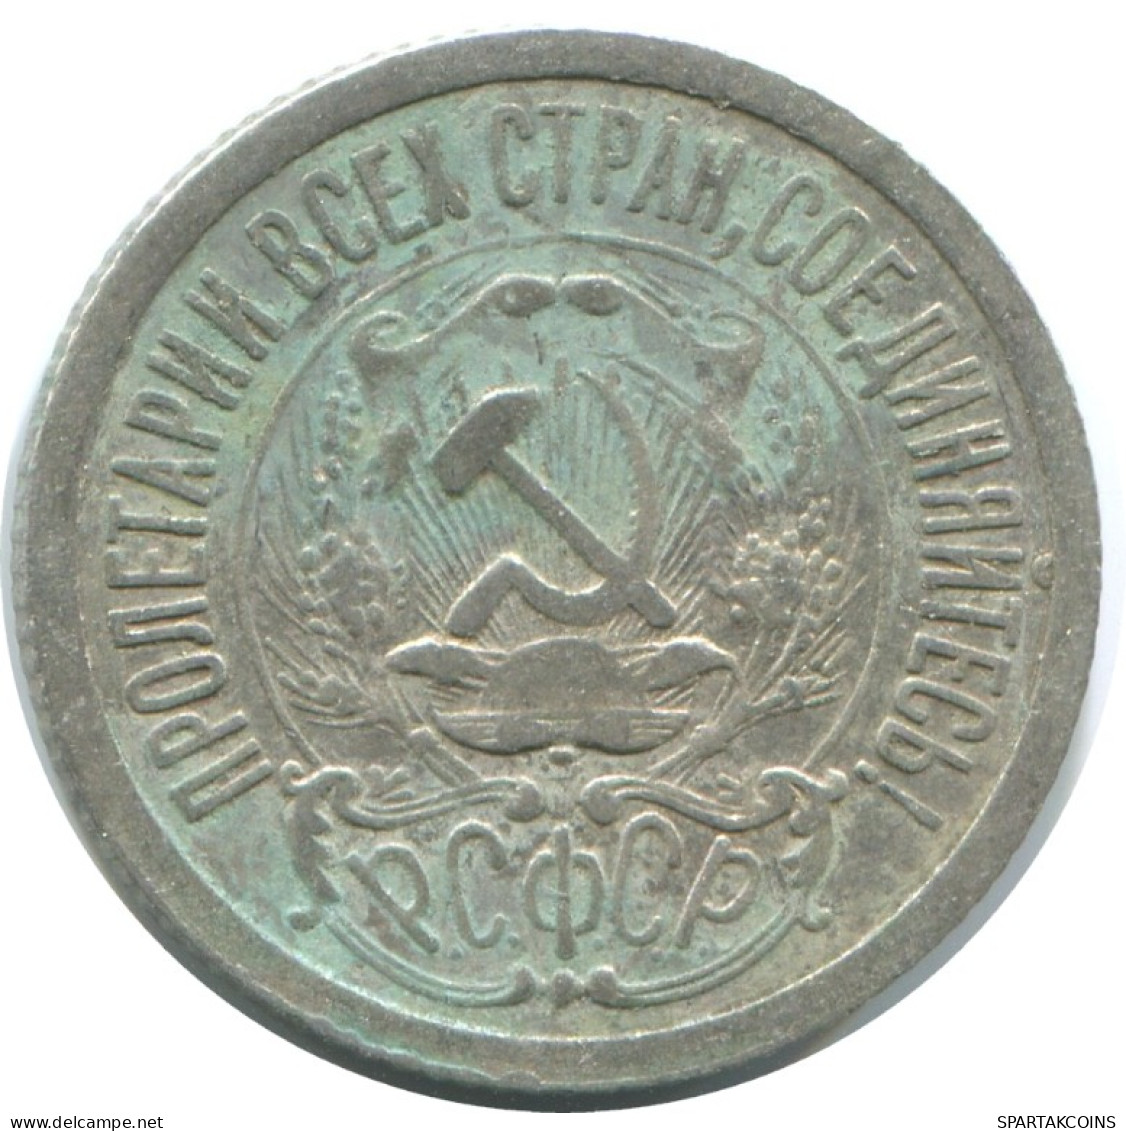 15 KOPEKS 1923 RUSSLAND RUSSIA RSFSR SILBER Münze HIGH GRADE #AF147.4.D.A - Russia